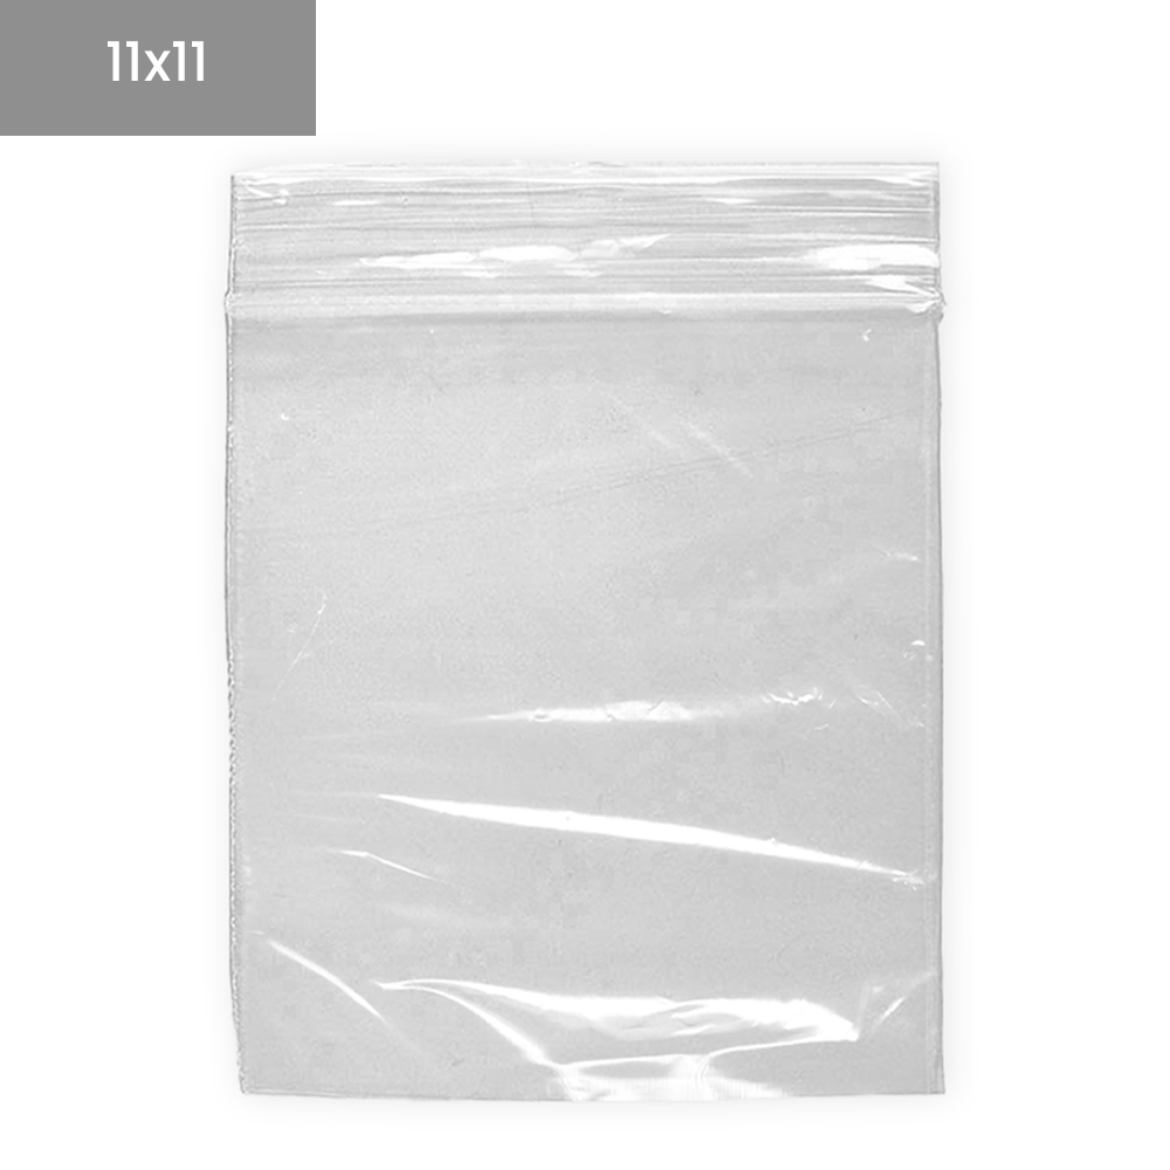 Bolsas de plástico transparentes ZIP 11x11